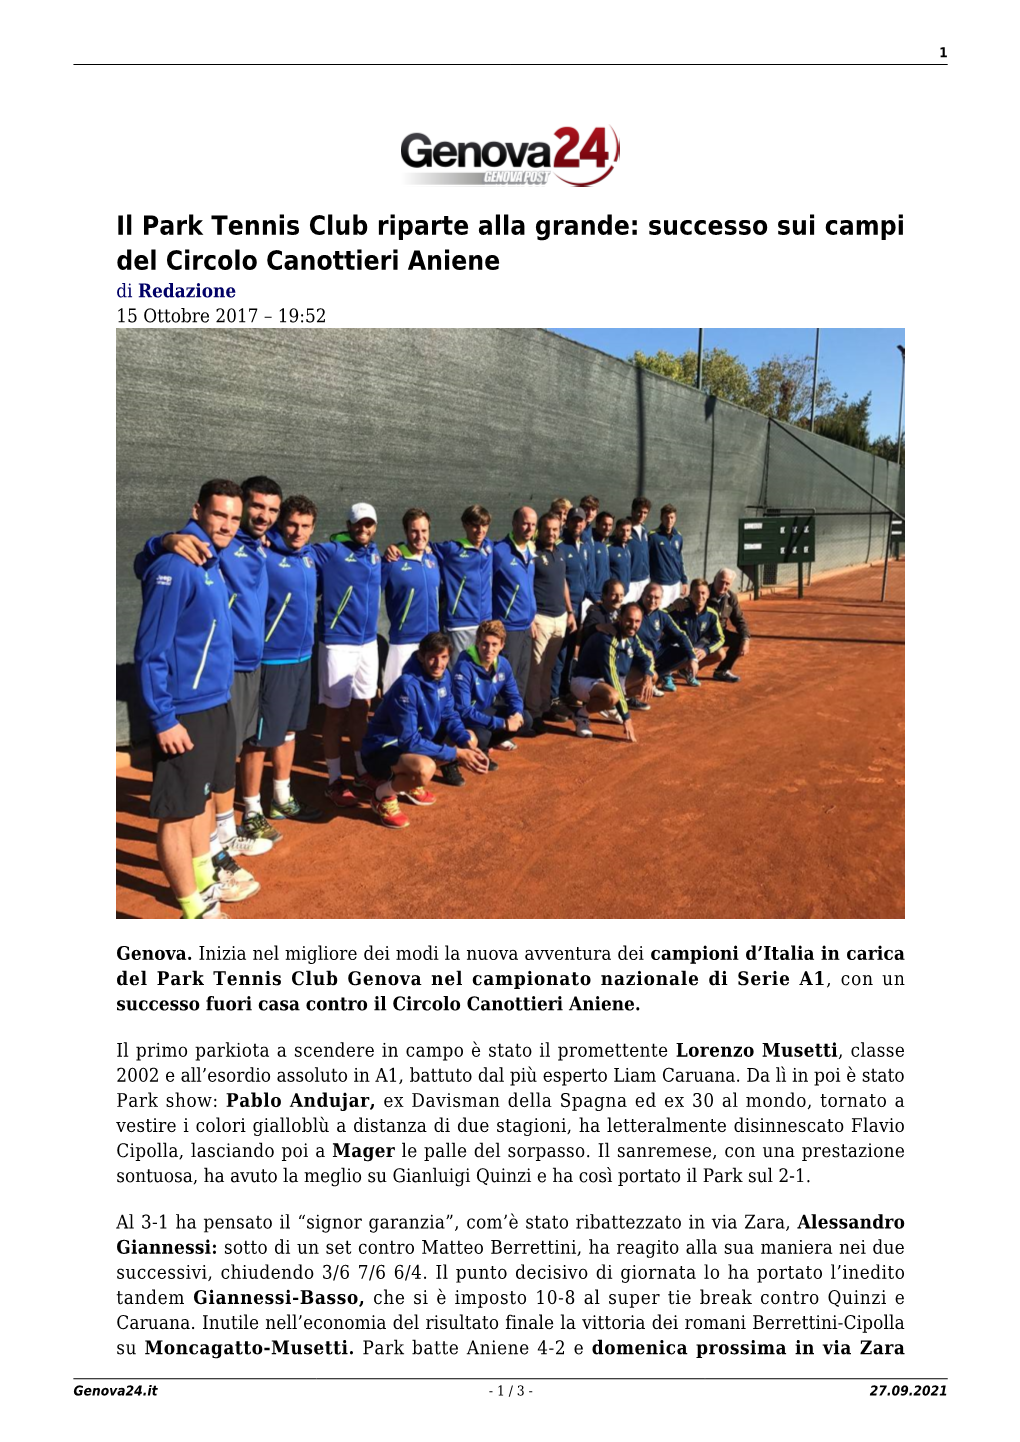 Il Park Tennis Club Riparte Alla Grande: Successo Sui Campi Del Circolo Canottieri Aniene Di Redazione 15 Ottobre 2017 – 19:52